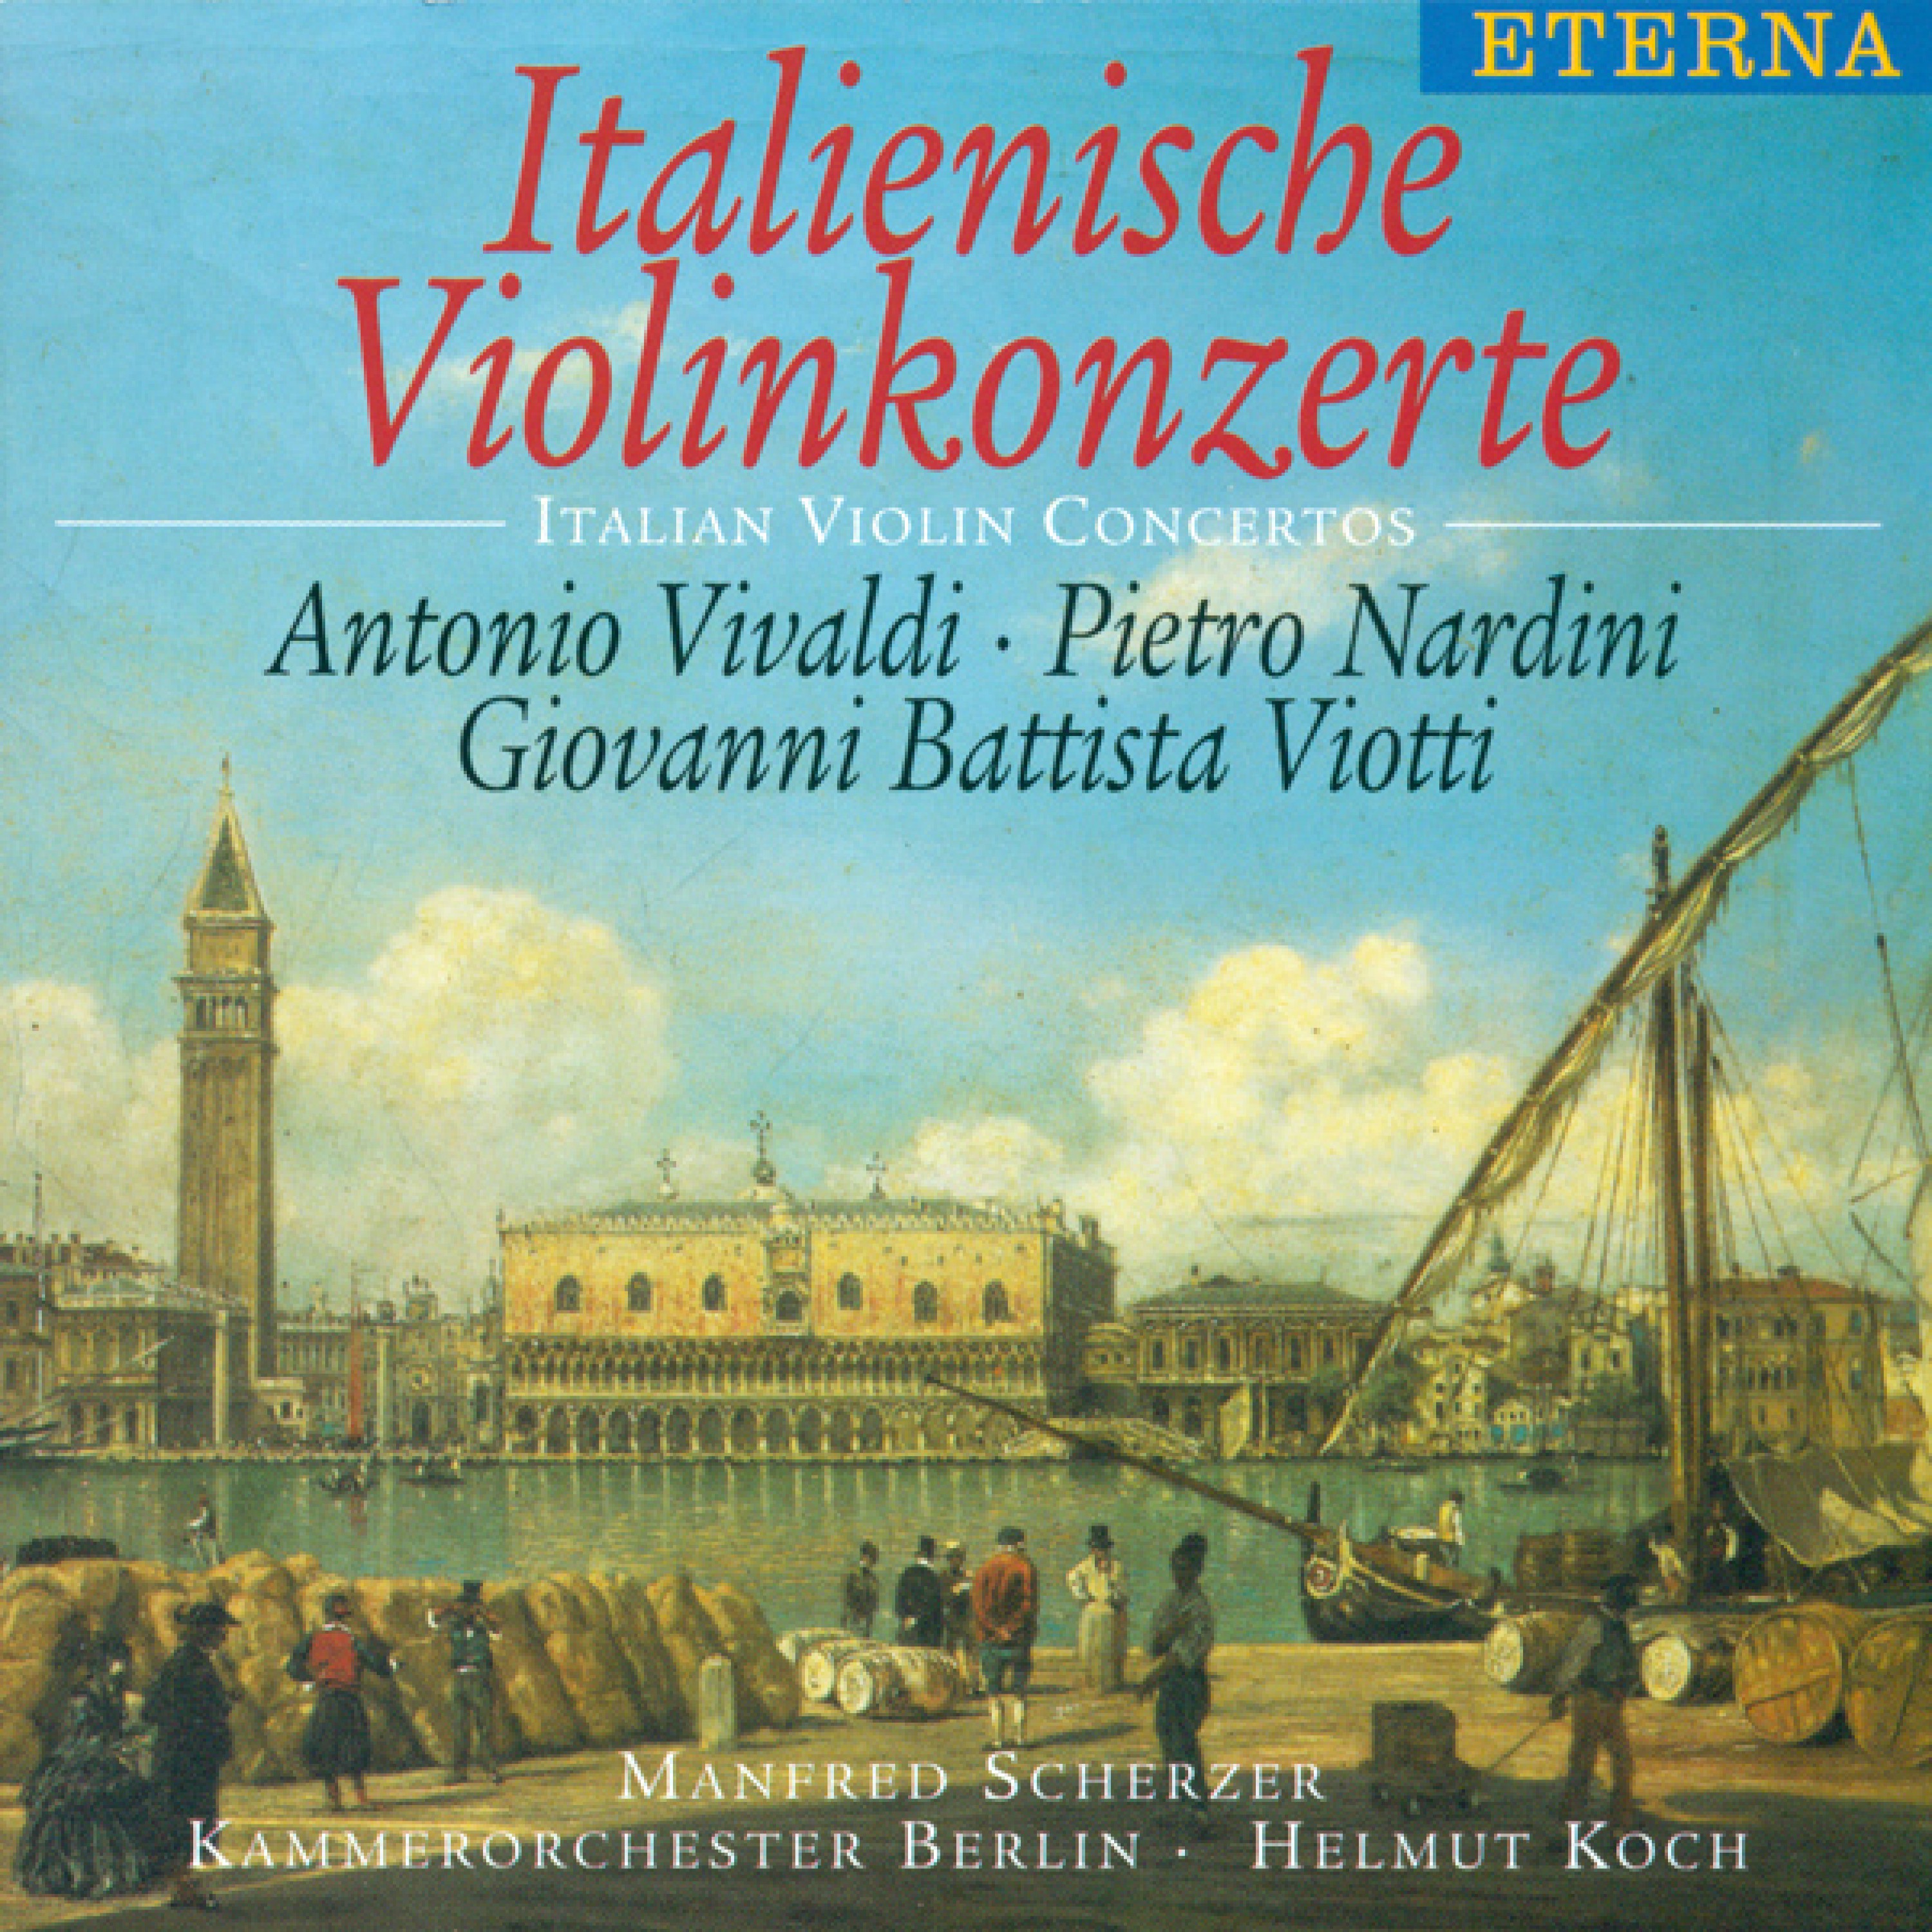 Violin Concerto No. 22 in A Minor, G. 97: II. Adagio